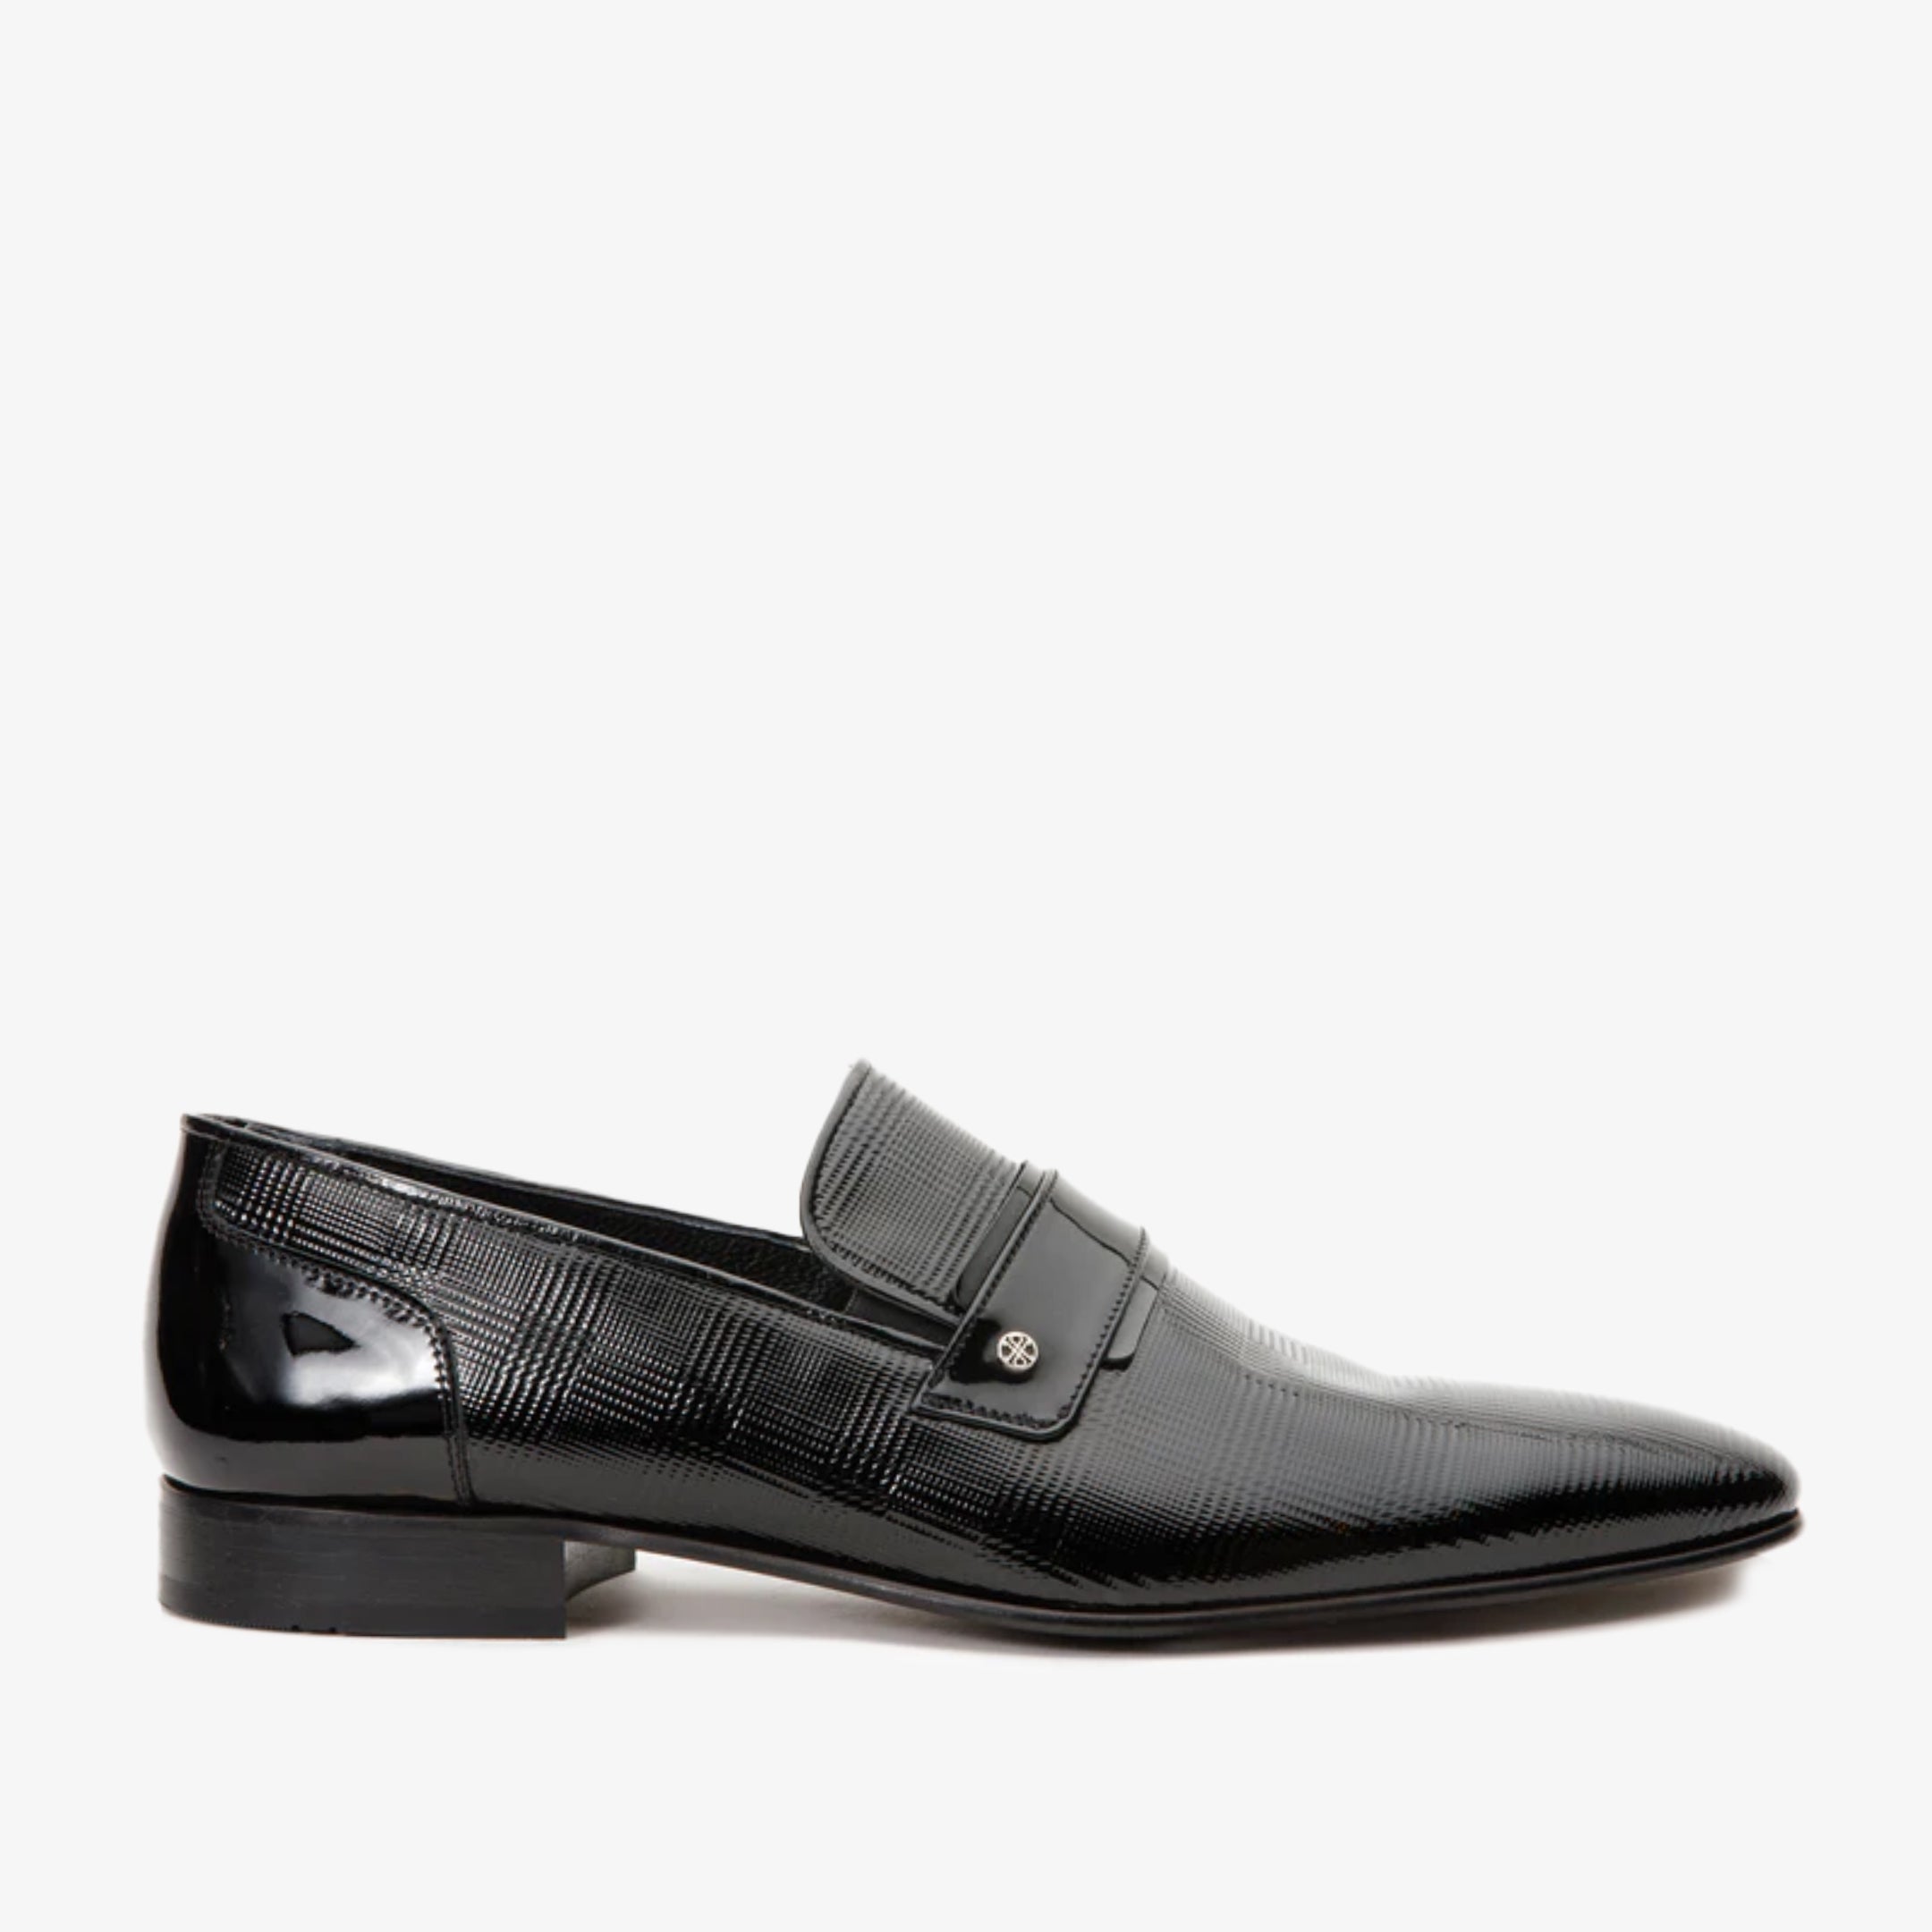 The Warsaw Men Shoe Black Leather Bit Loafer